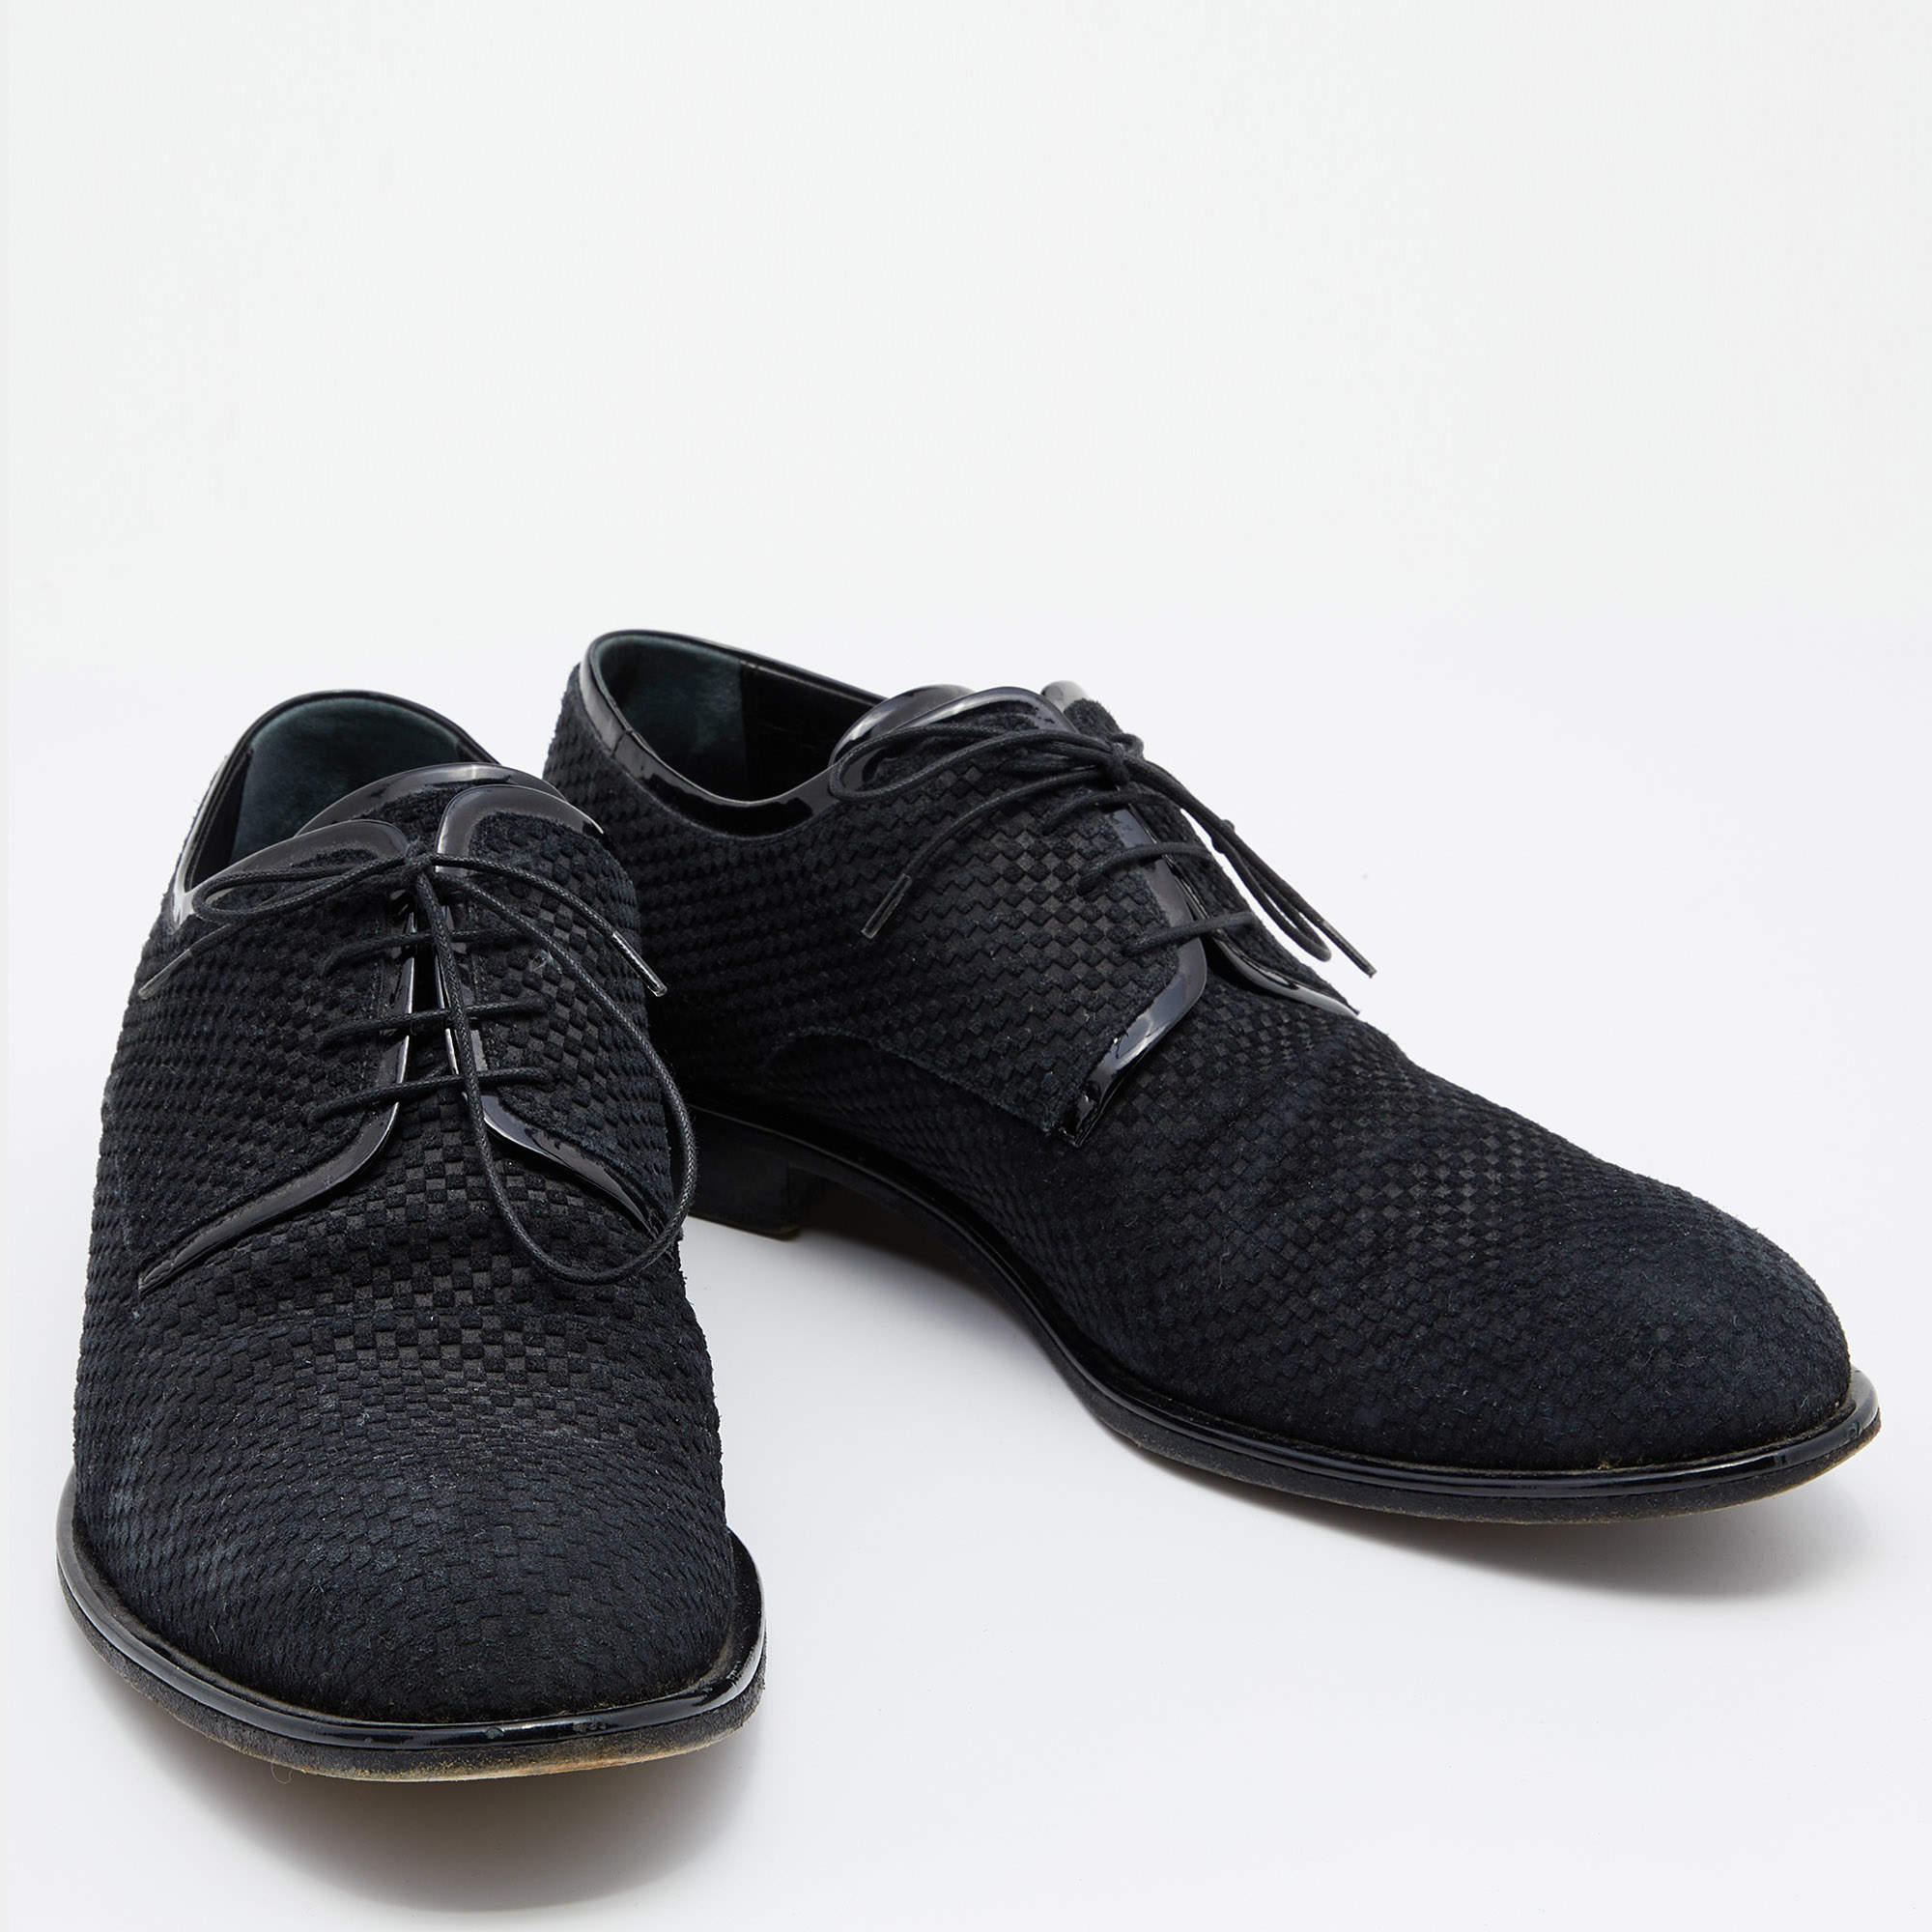 Louis Vuitton Black Damier Leather Lace Up Oxfords Size 43 - ShopStyle